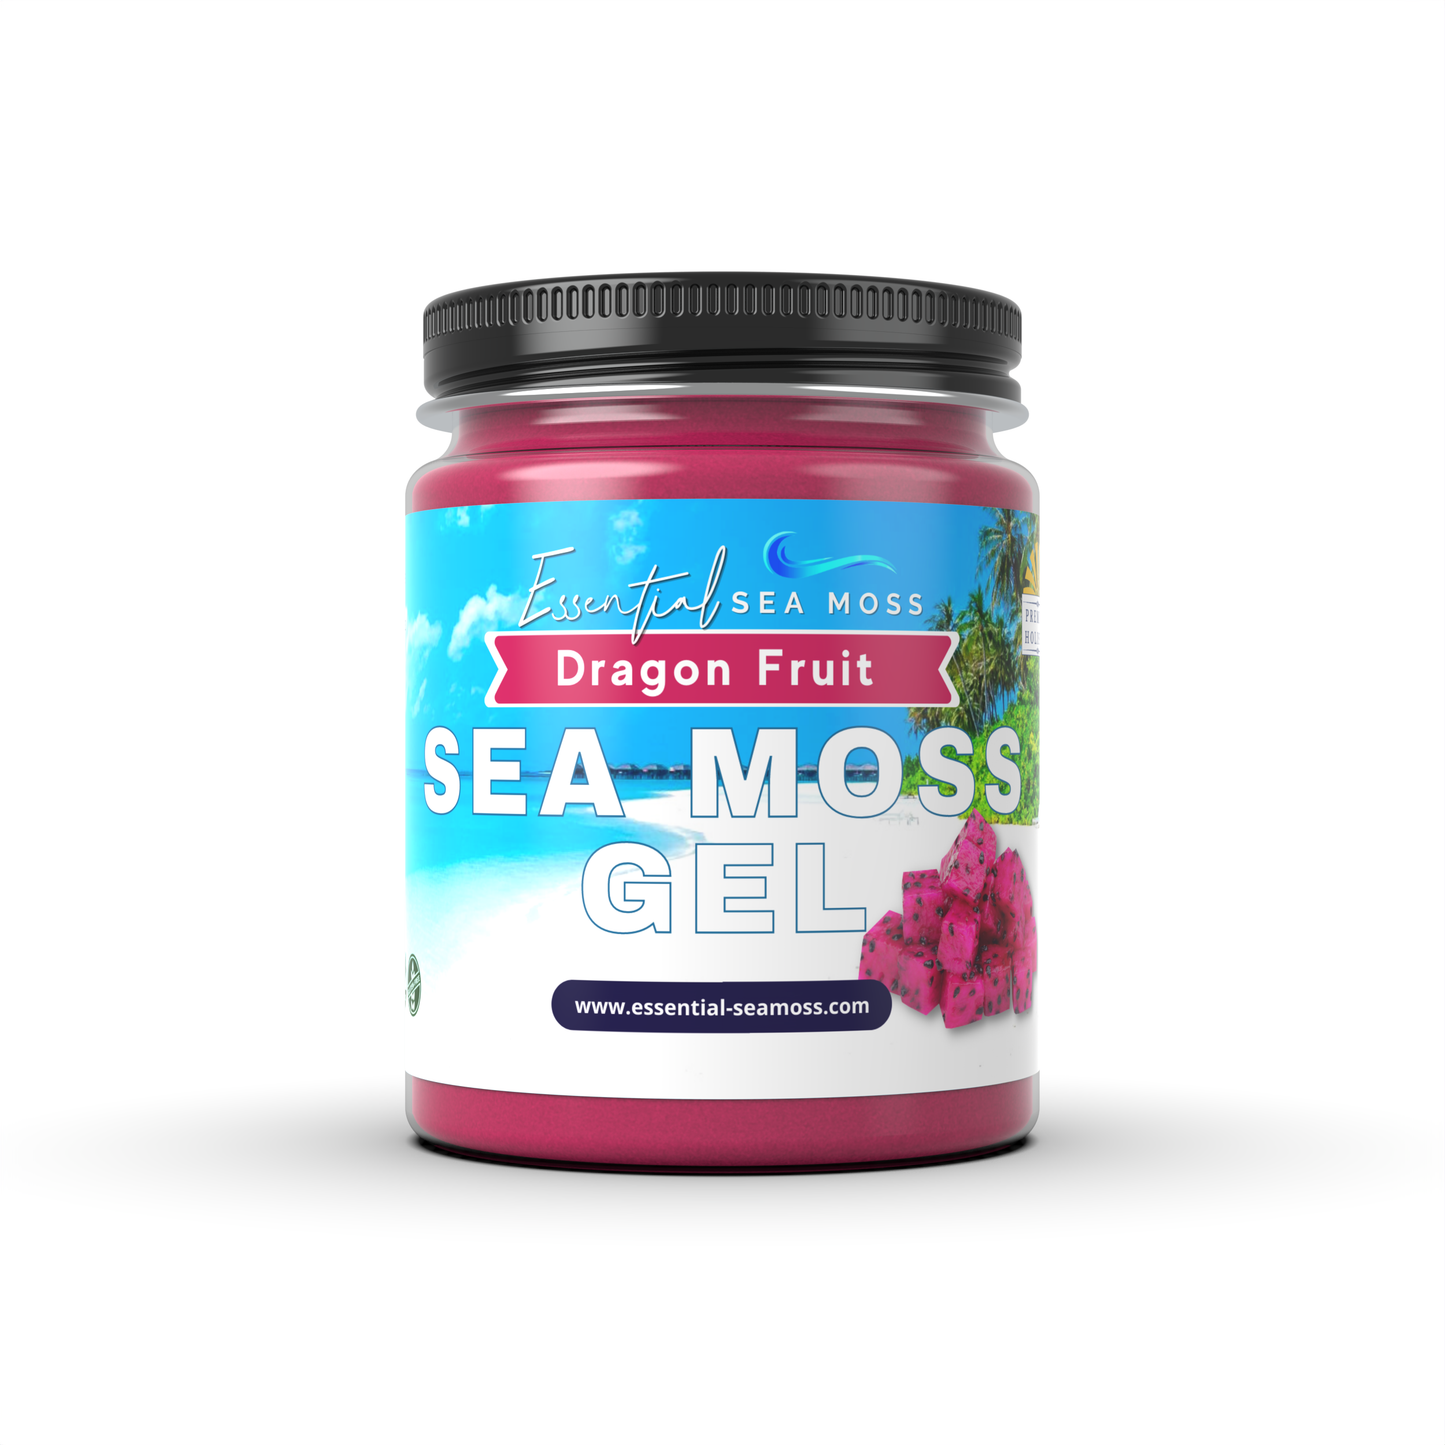 Fruit Infused Sea Moss Gel